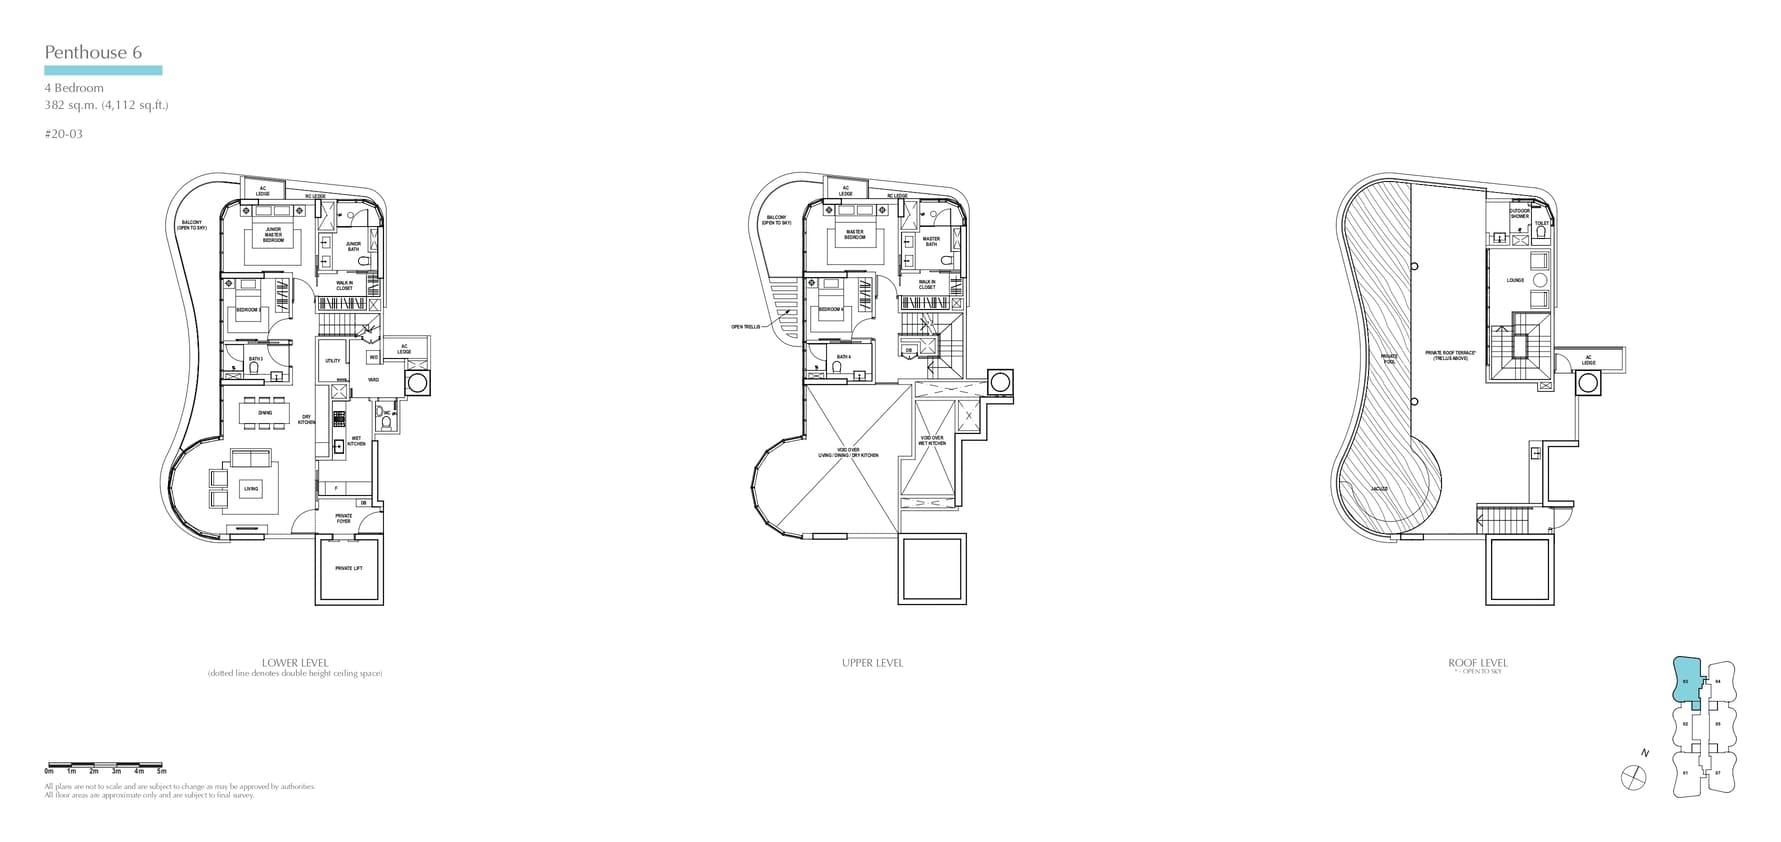 fp-amber-skye-penthouse-6-floor-plan.jpg